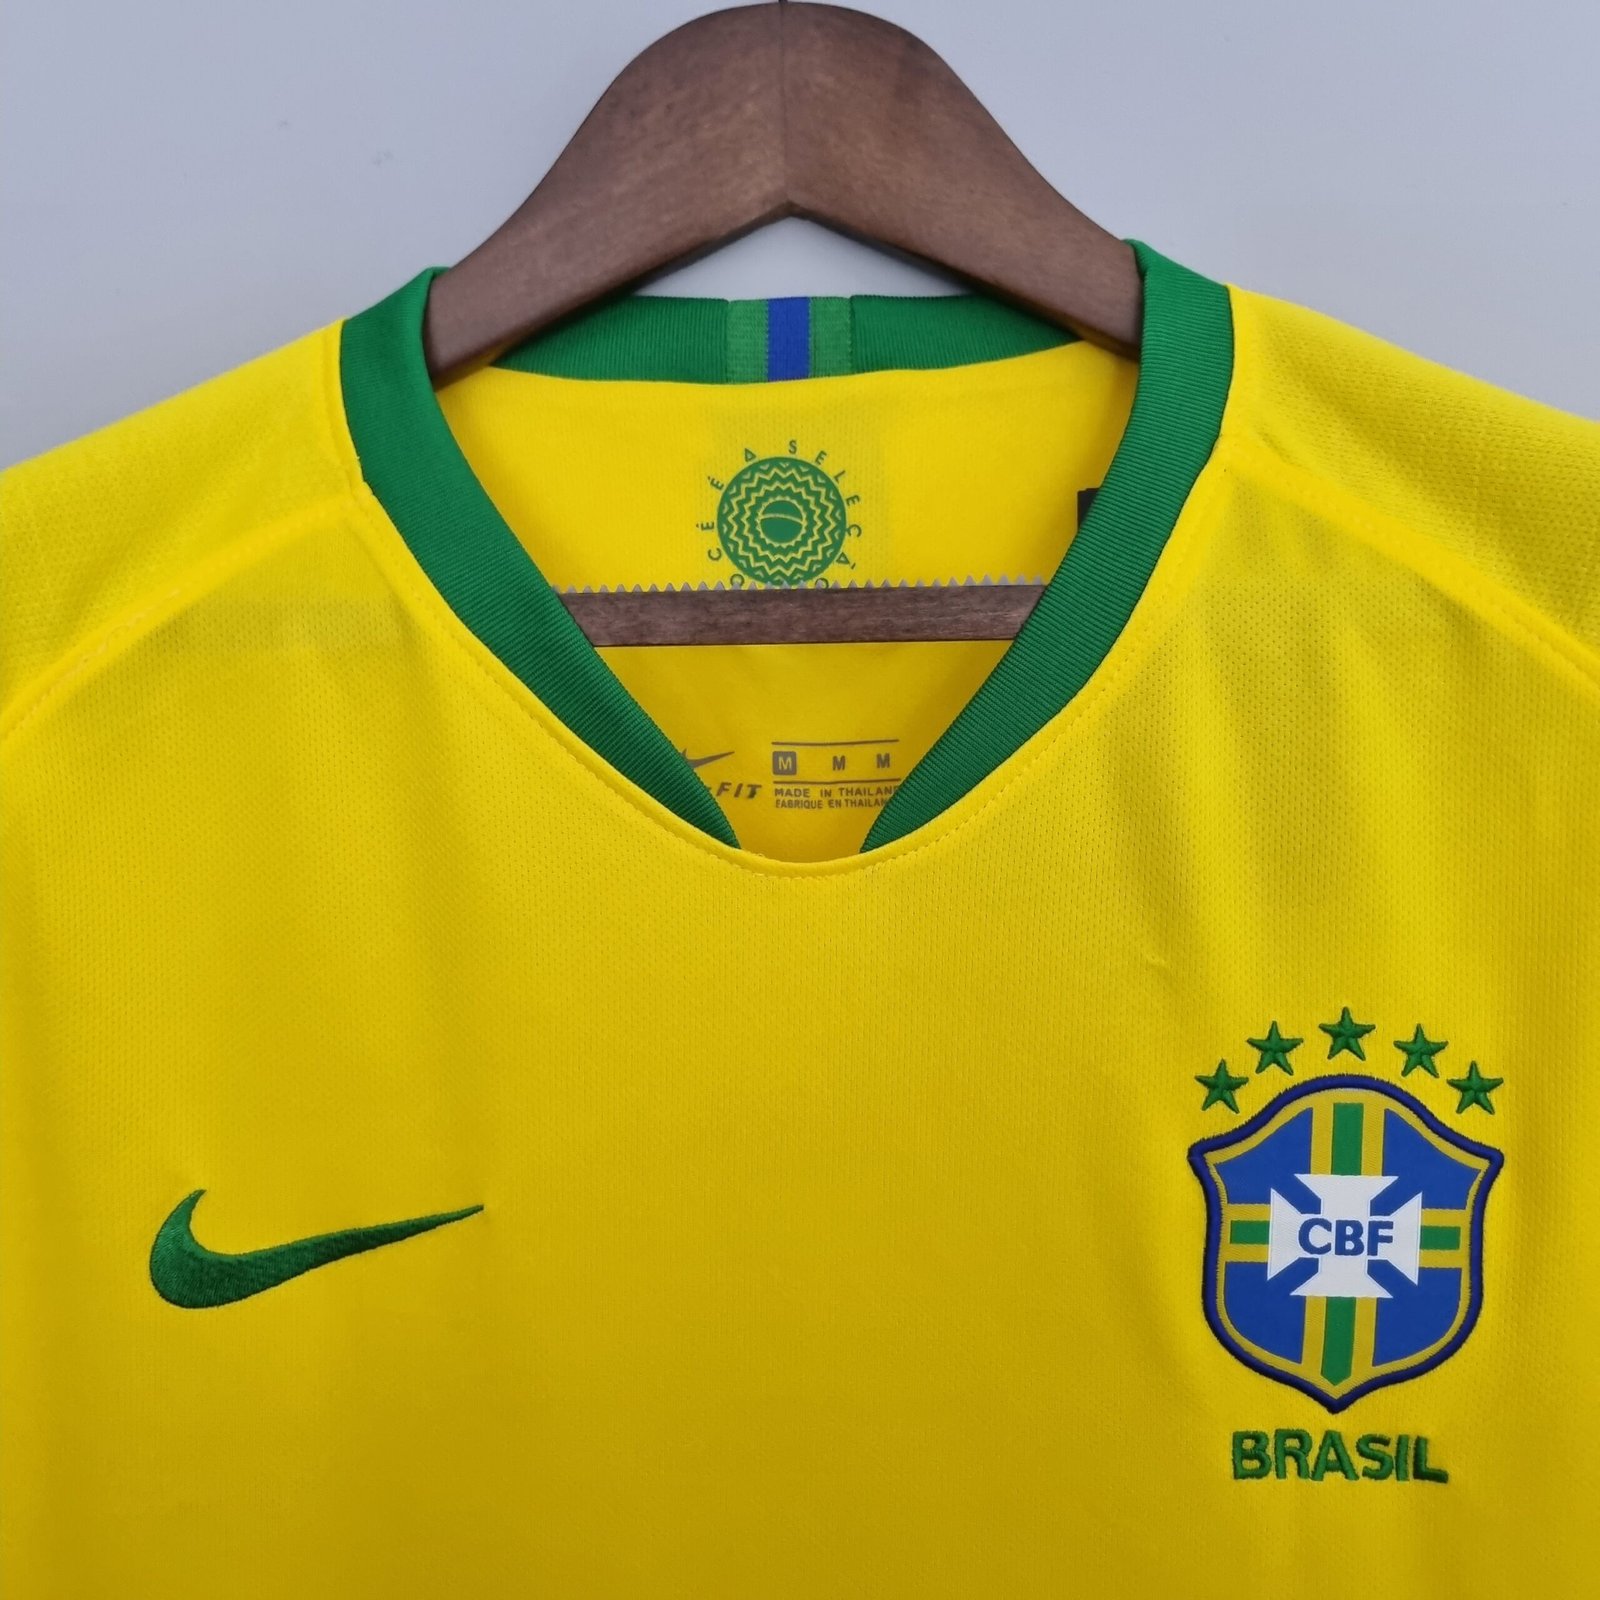 https://kssports23.com.br/wp-content/uploads/2022/06/camisa-selecao-brasileira-amarelo-home-2018-versao-torcedor-retro-3-scaled.jpg